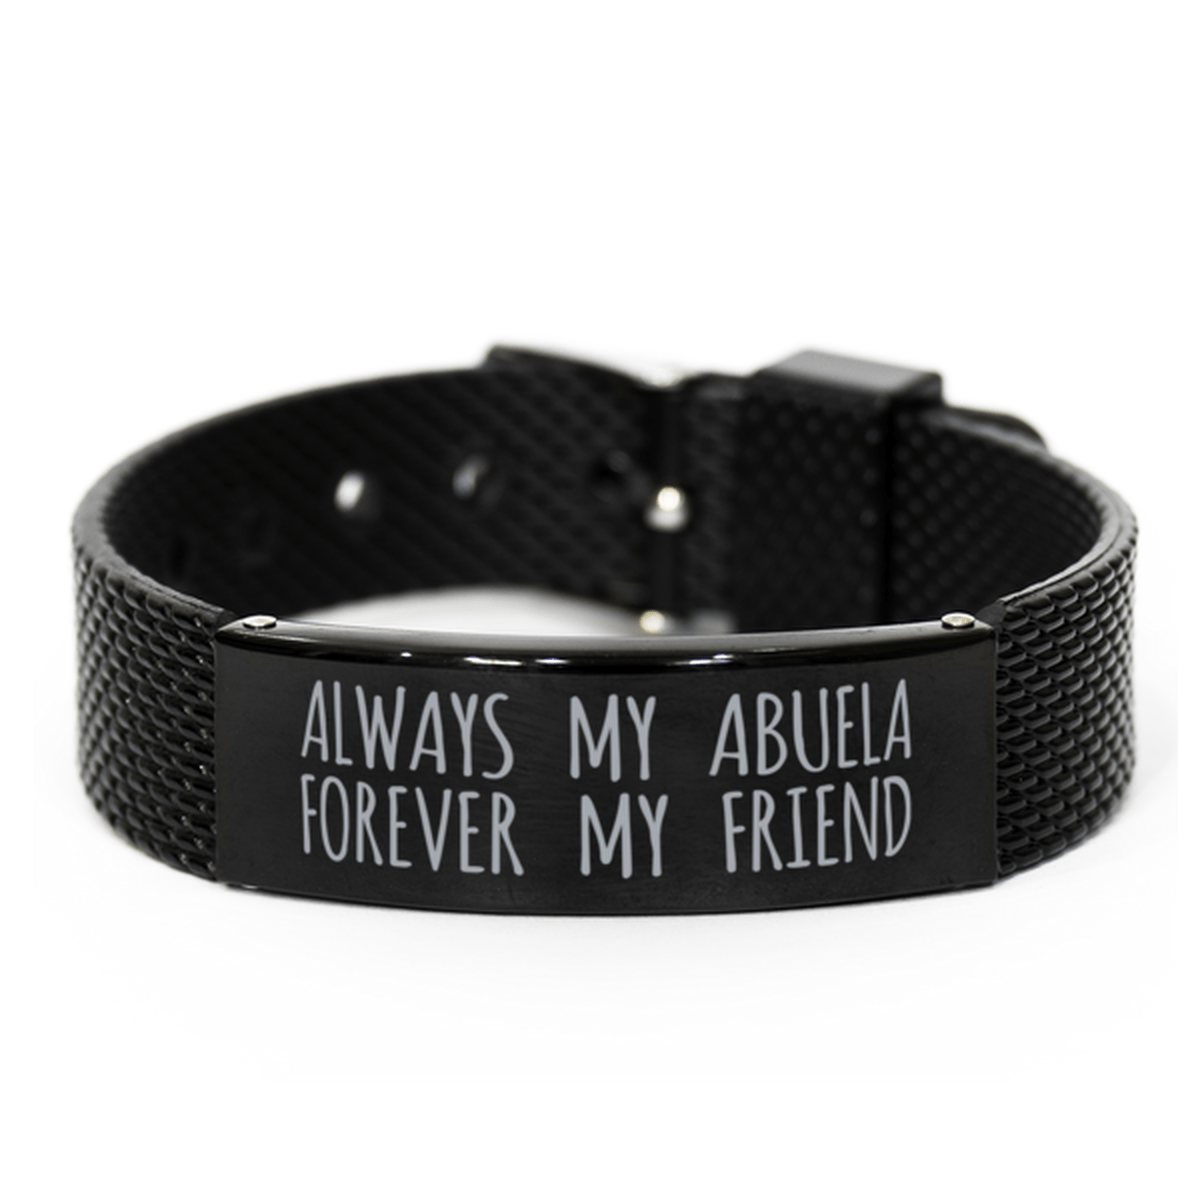 Inspirational Abuela Black Shark Mesh Bracelet, Always My Abuela Forever My Friend, Best Birthday Gifts for Family Friends